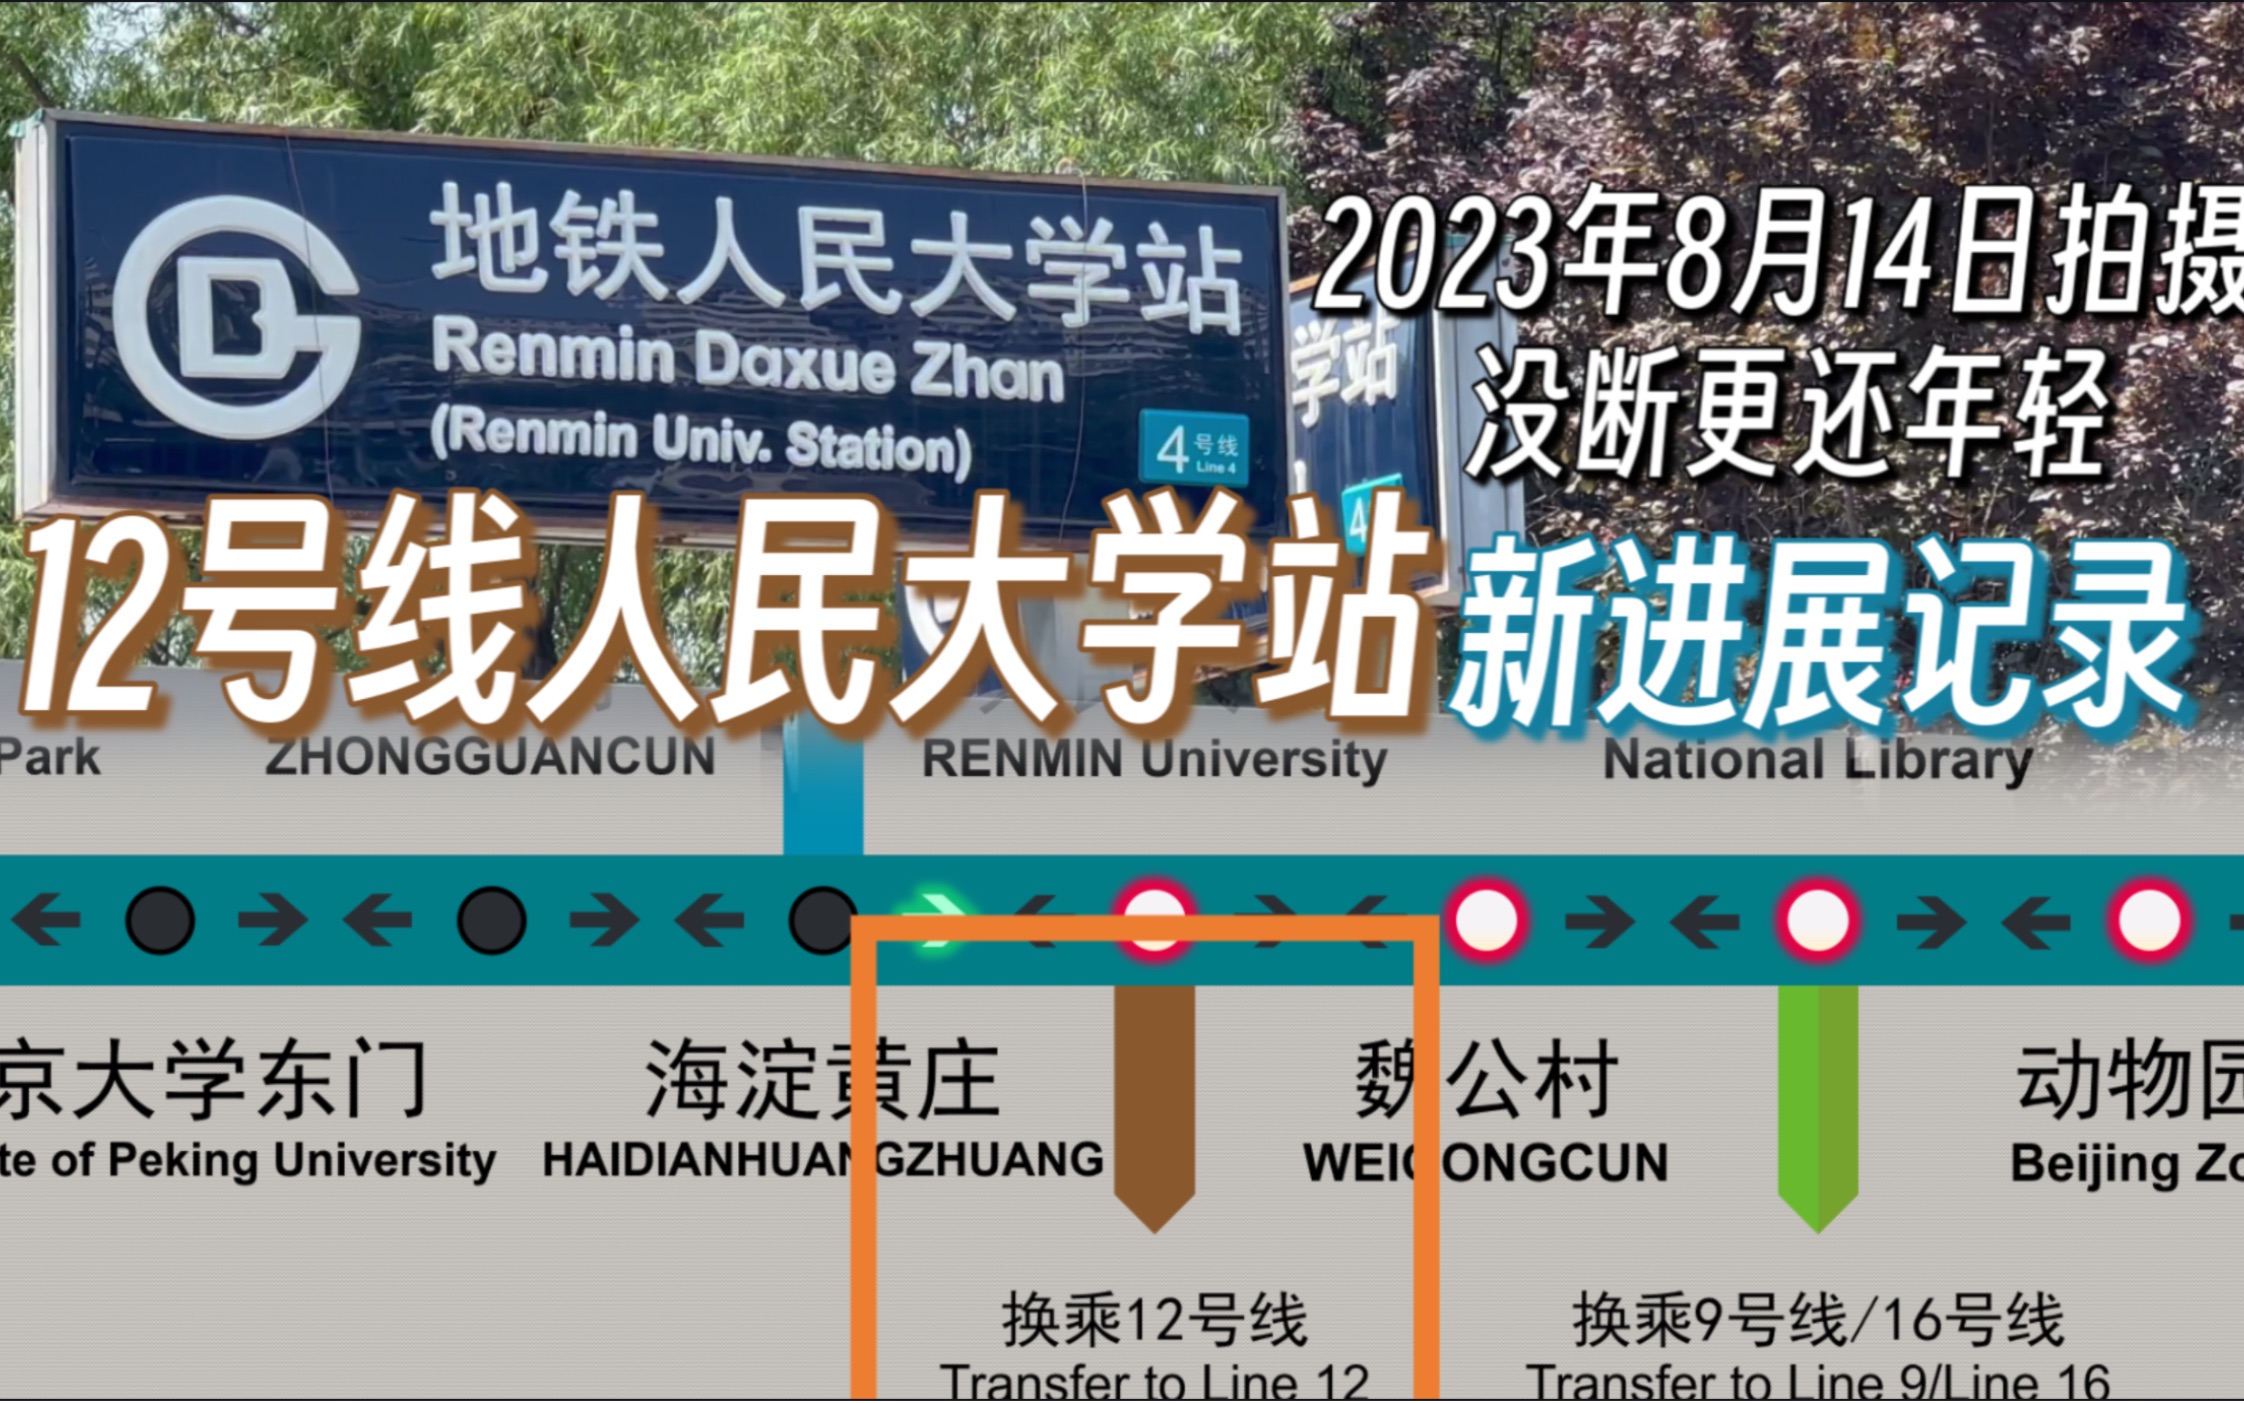 【北京轨道交通】12号线人民大学站新进展记录（2023年8月14日拍摄）